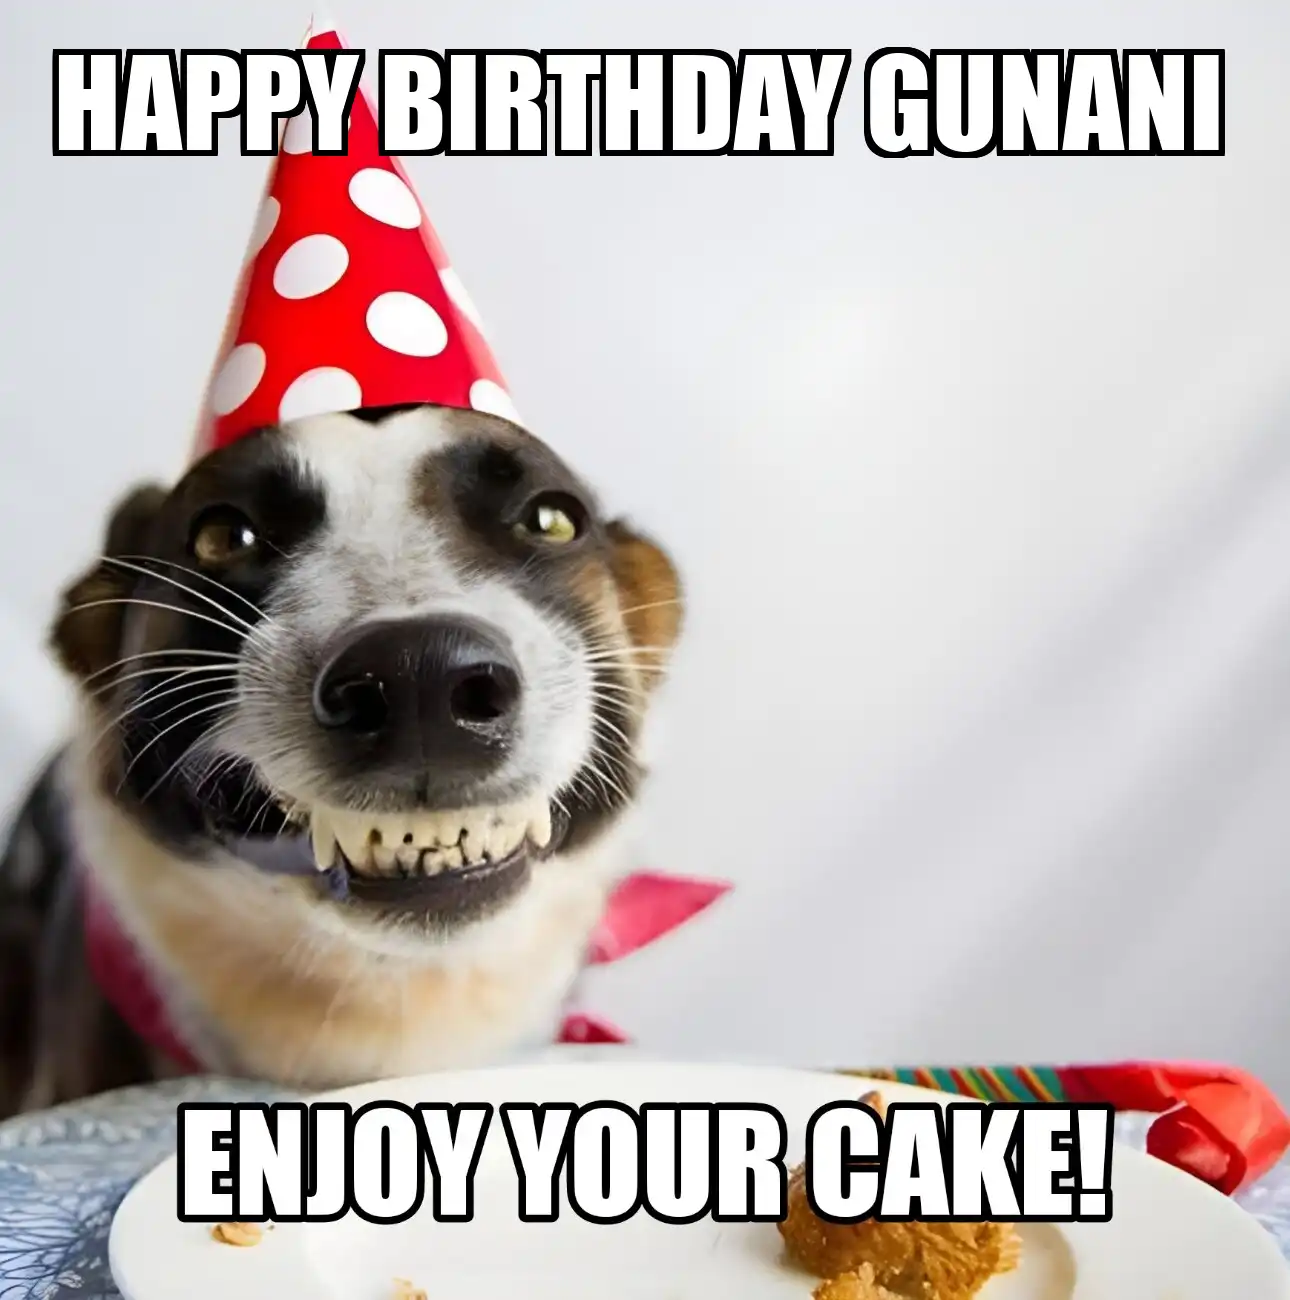 Happy Birthday Gunani Enjoy Your Cake Dog Meme